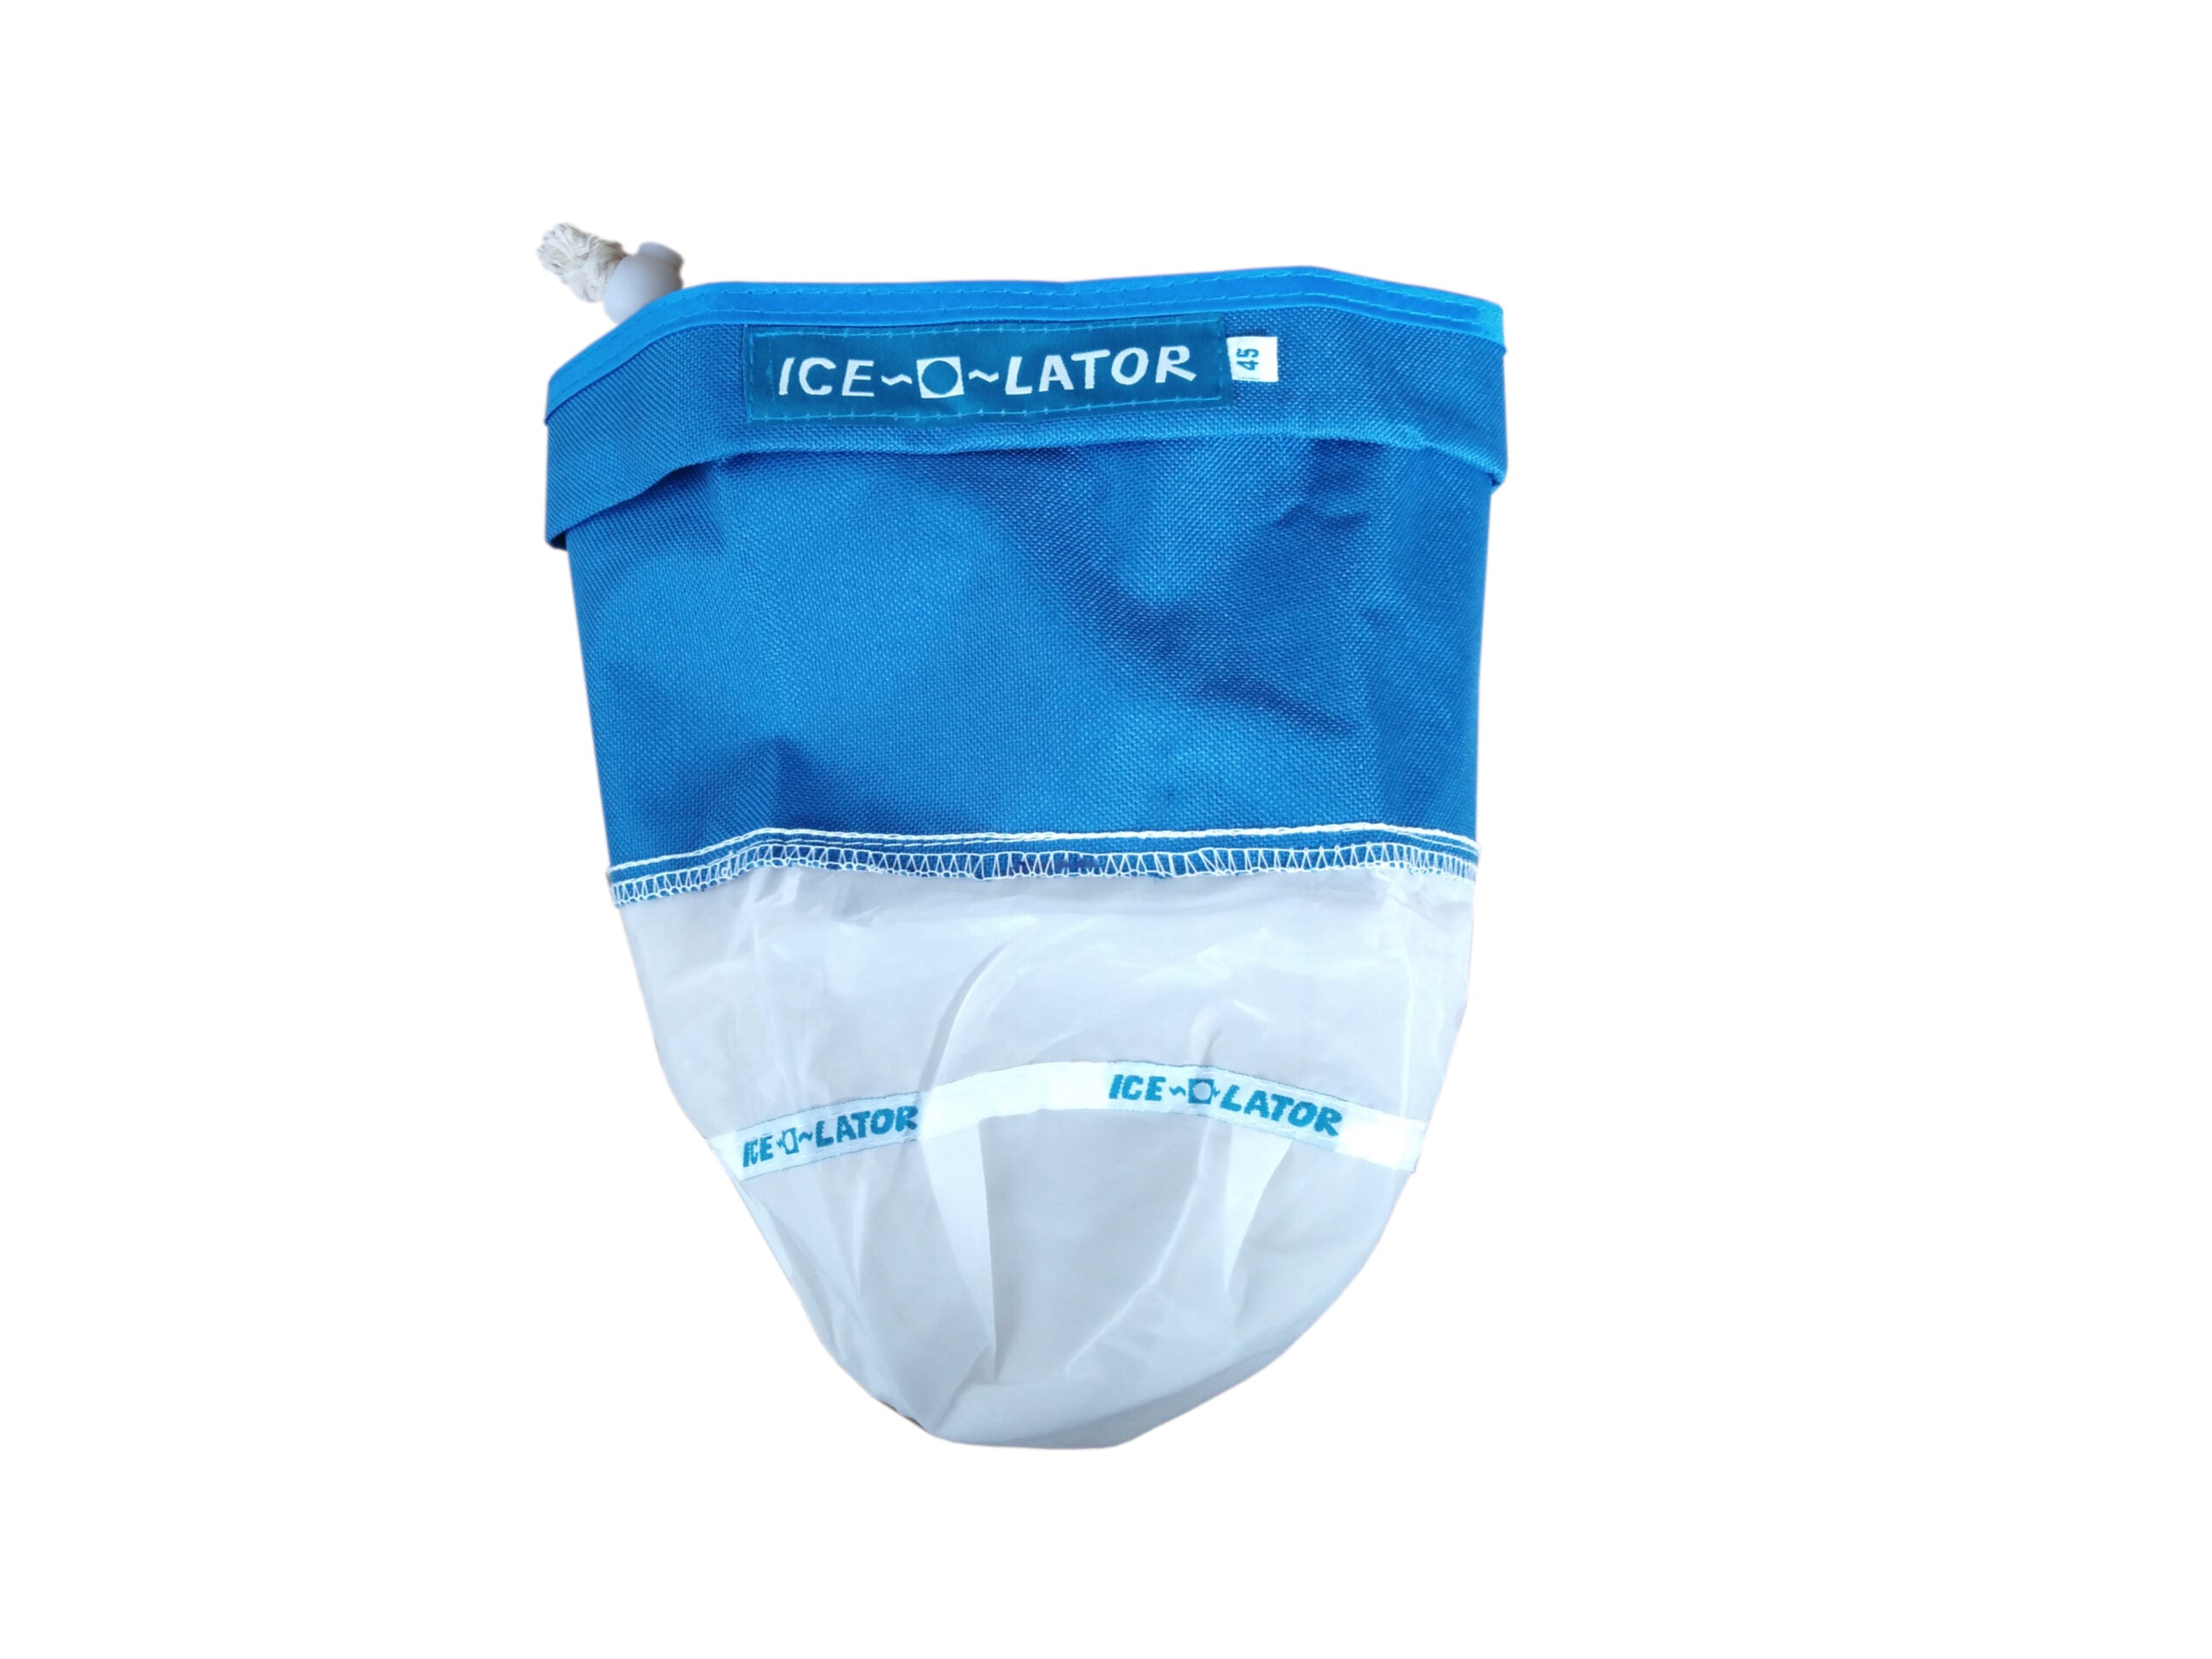 Tamaño de viaje de la bolsa de Ice-O-Lator®